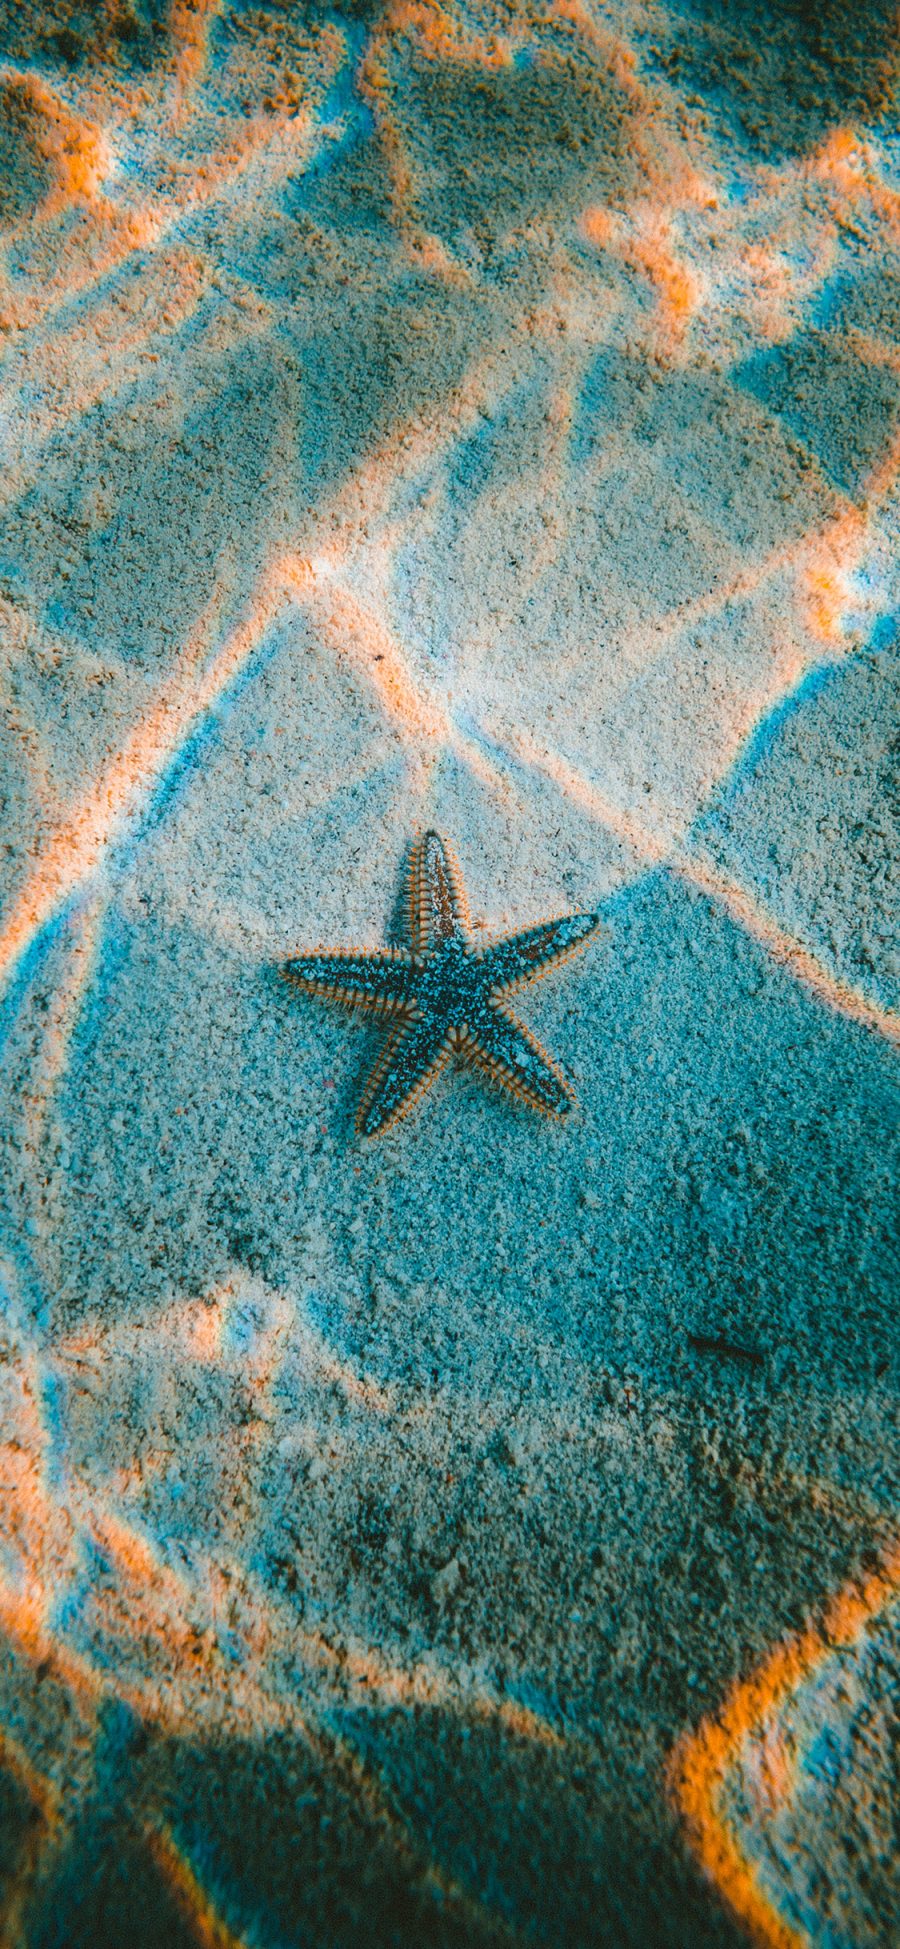 [2436×1125]海星 大海 海水 阳光 波纹 苹果手机壁纸图片